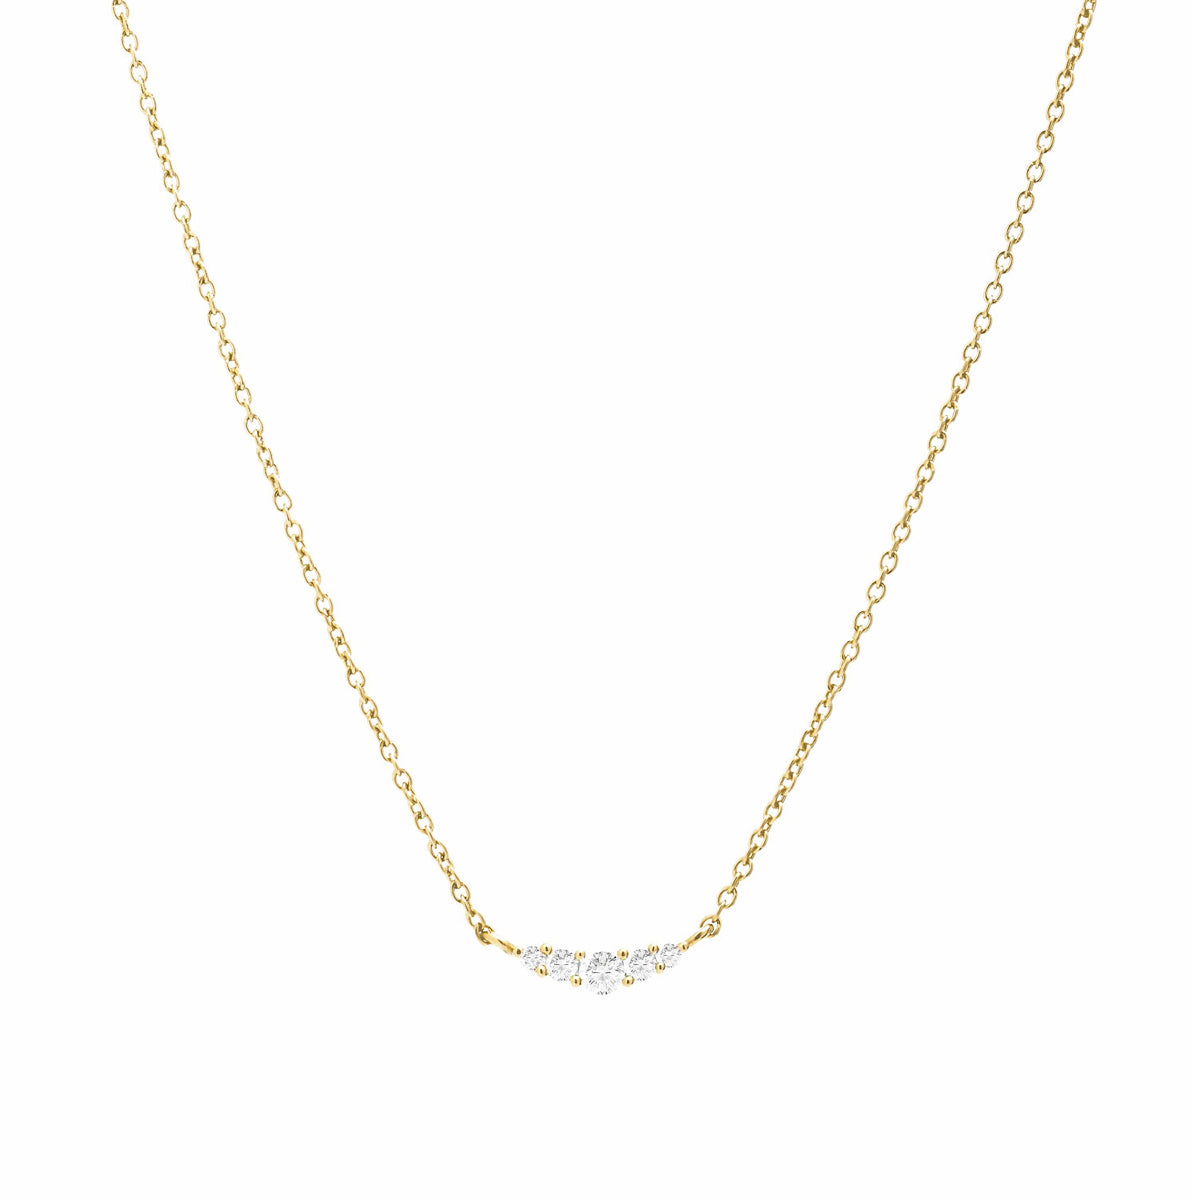 Asbu 18k sterling gold necklace